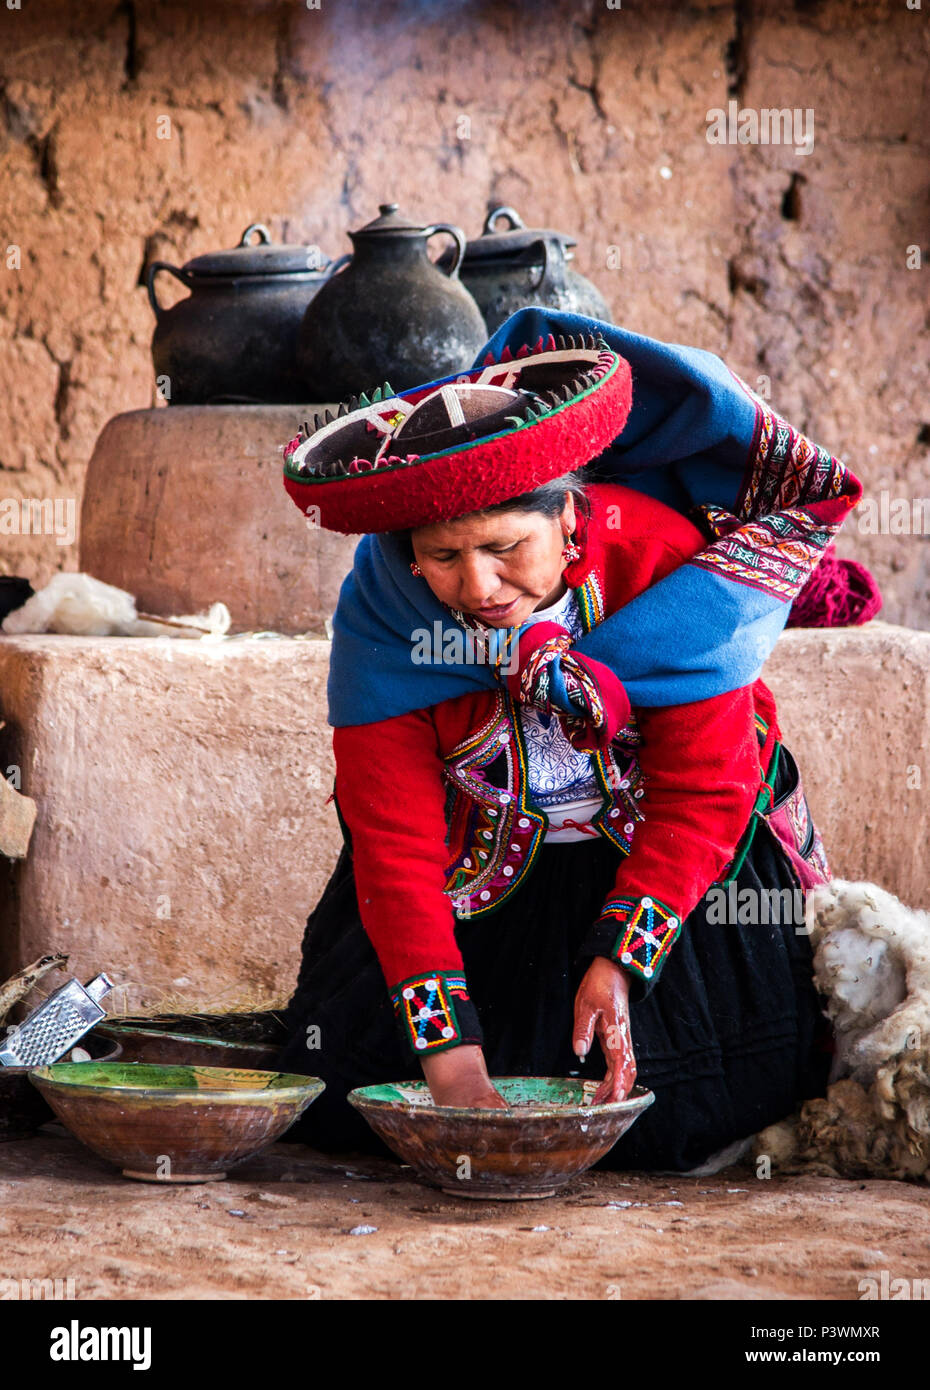 Peruvian woman colouring wool Stock Photo